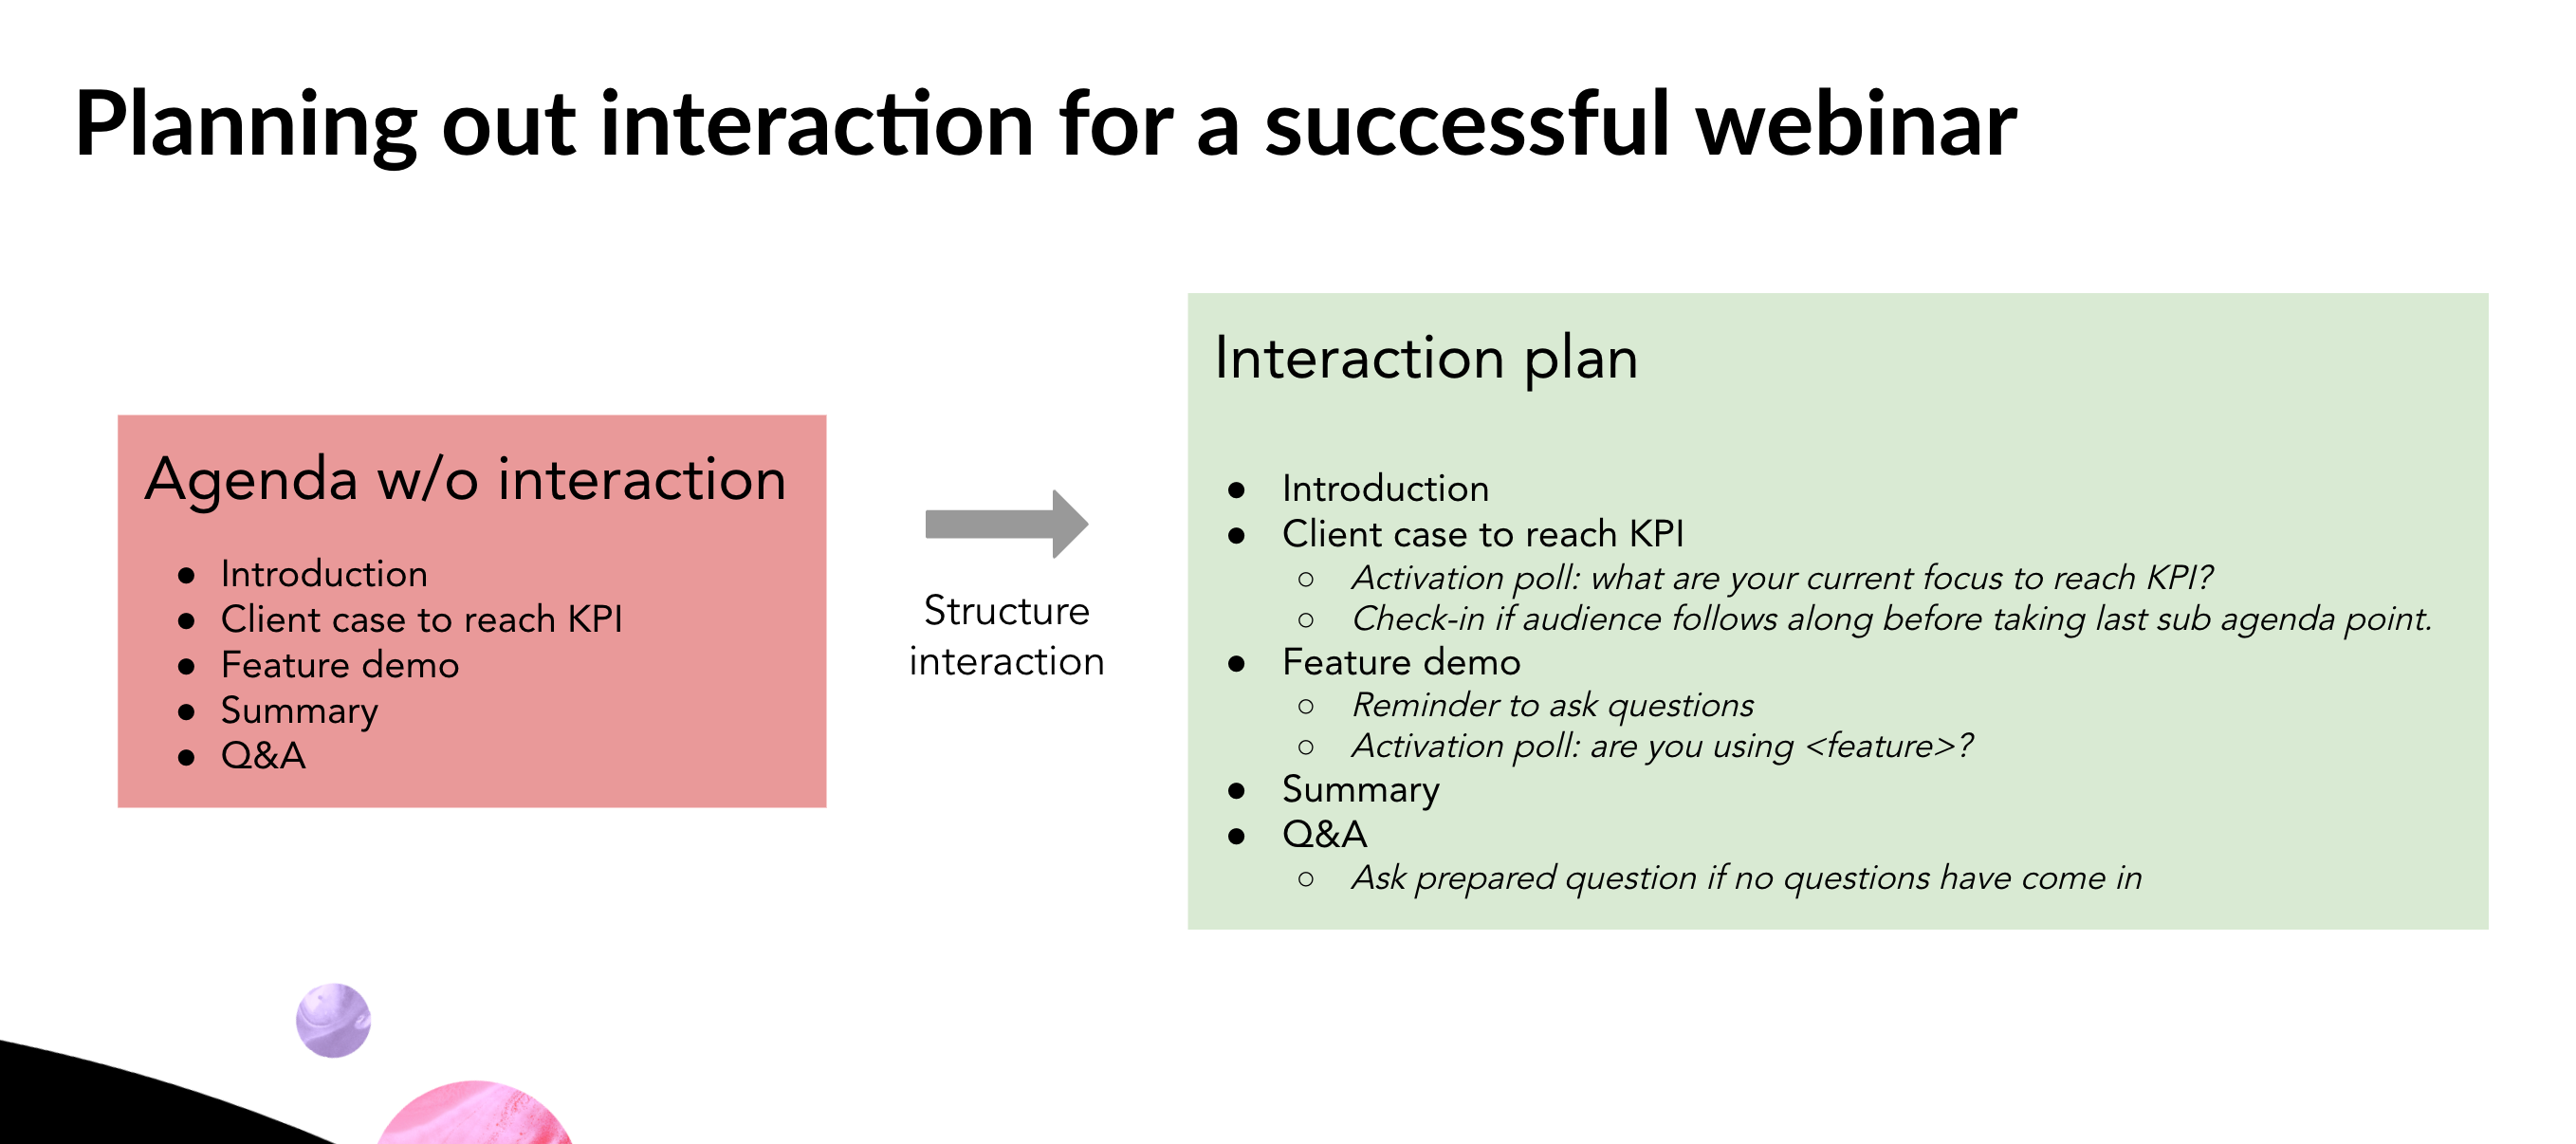 Planera agenda för interaktion i ditt nästa webbinarie